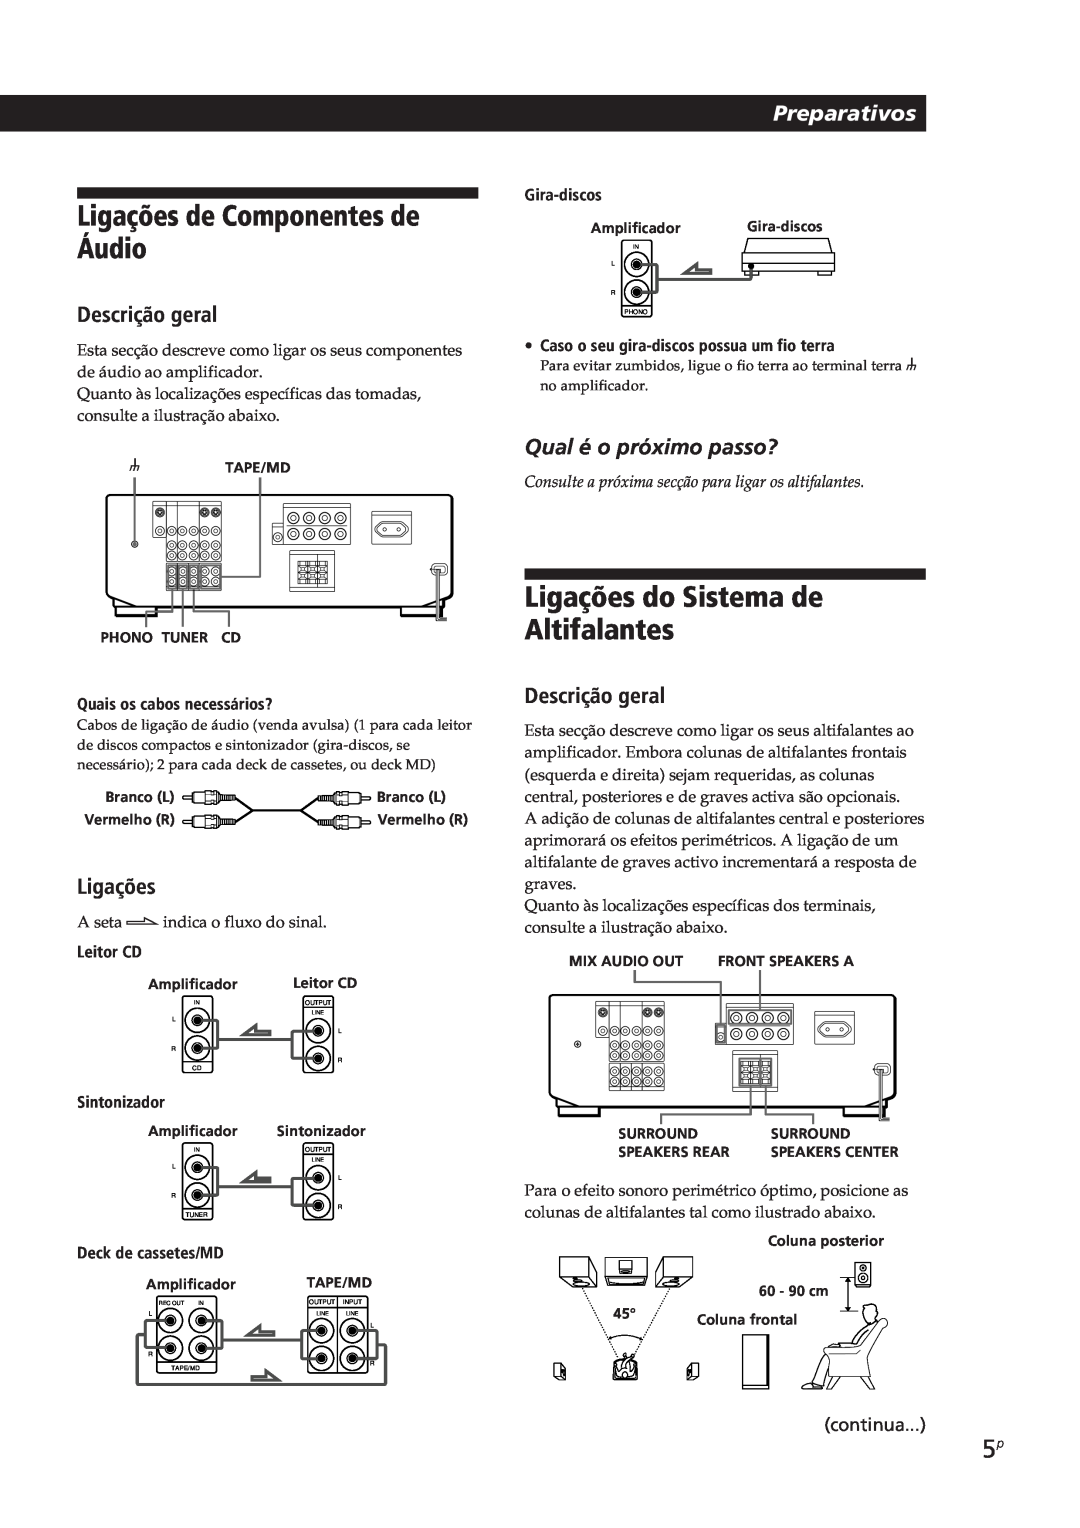 Sony TA-VE700 manual Ligações de Componentes de Áudio, Ligações do Sistema de Altifalantes, Descrição geral, Preparativos 